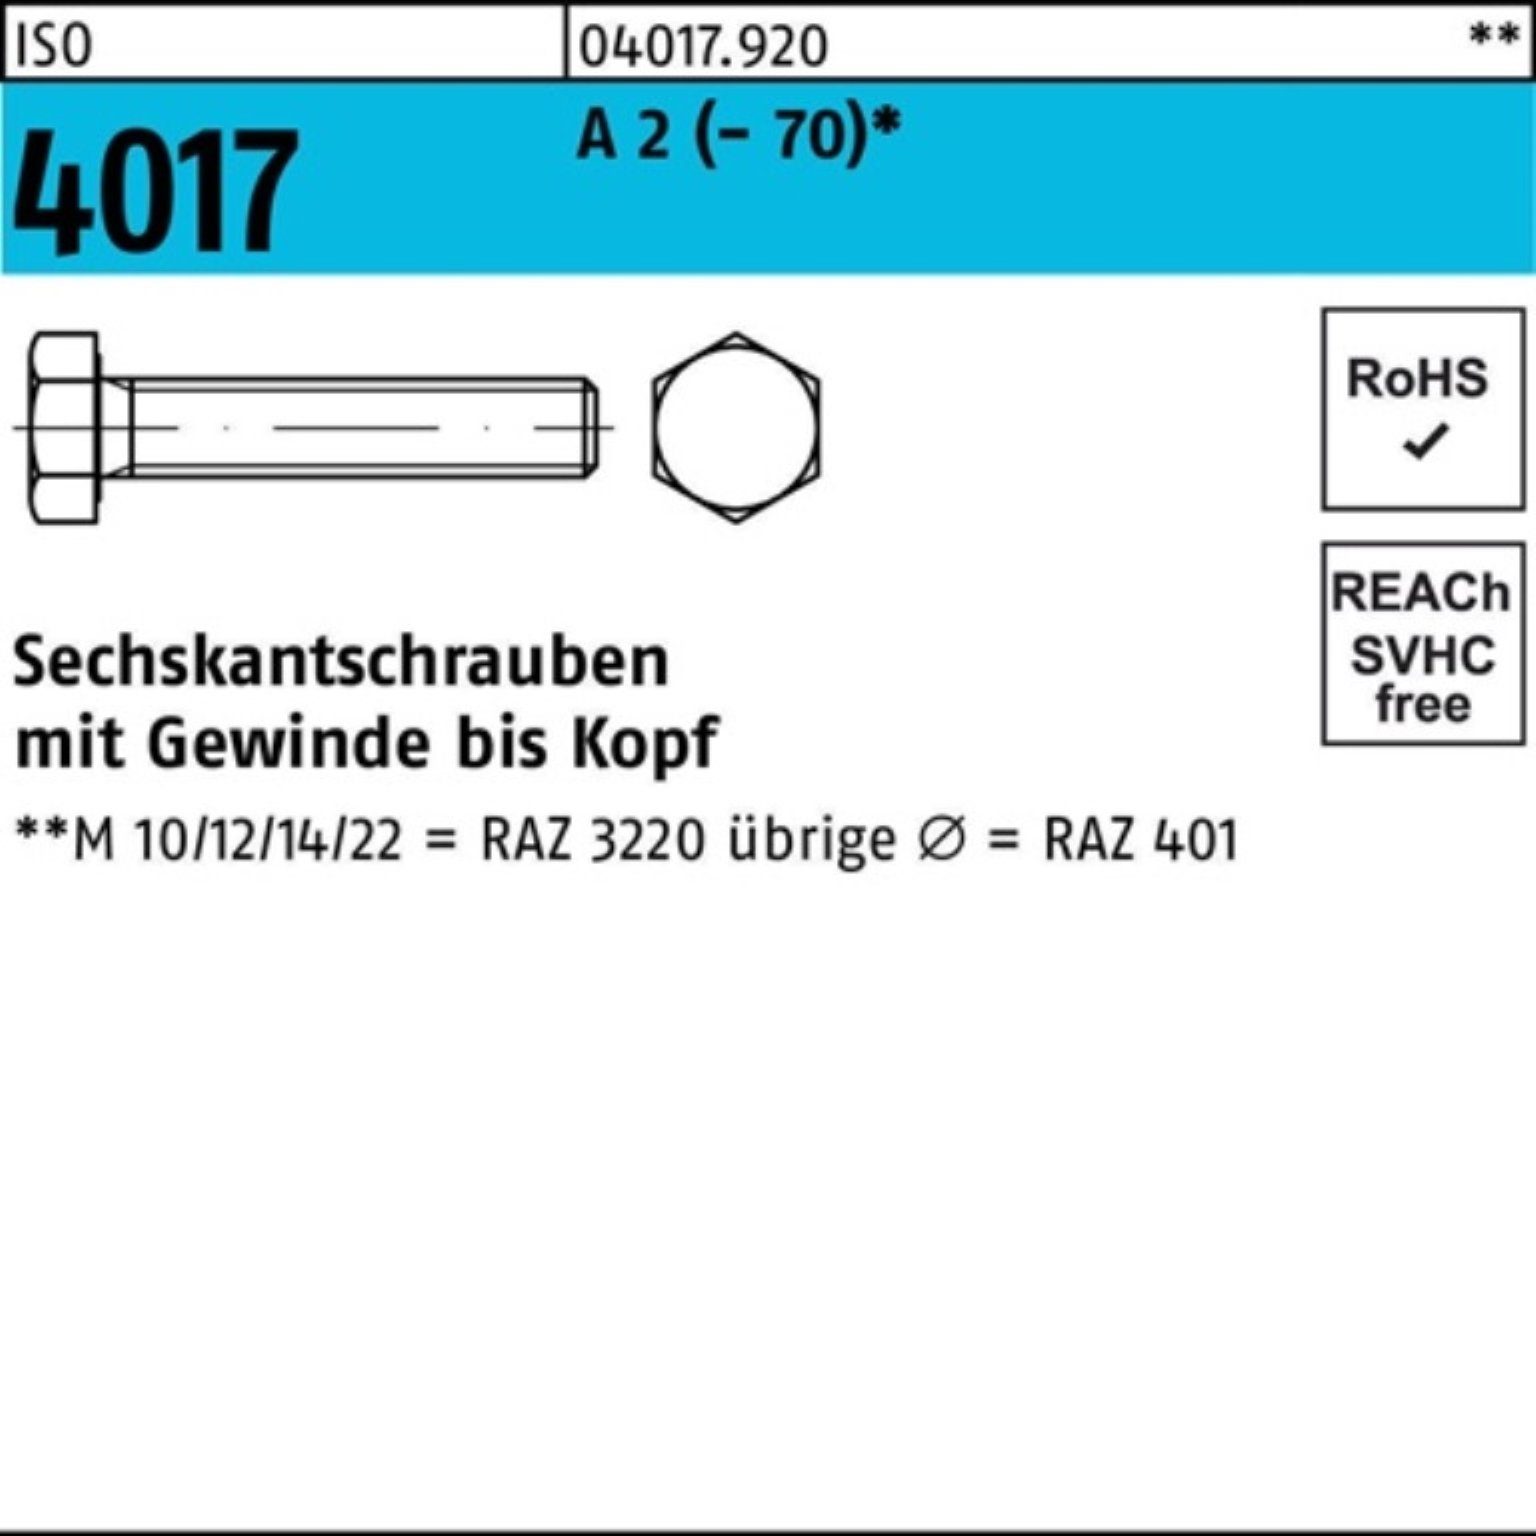 Bufab Sechskantschraube 100er Pack Sechskantschraube ISO 4017 VG M16x 130 A 2 (70) 25 Stück